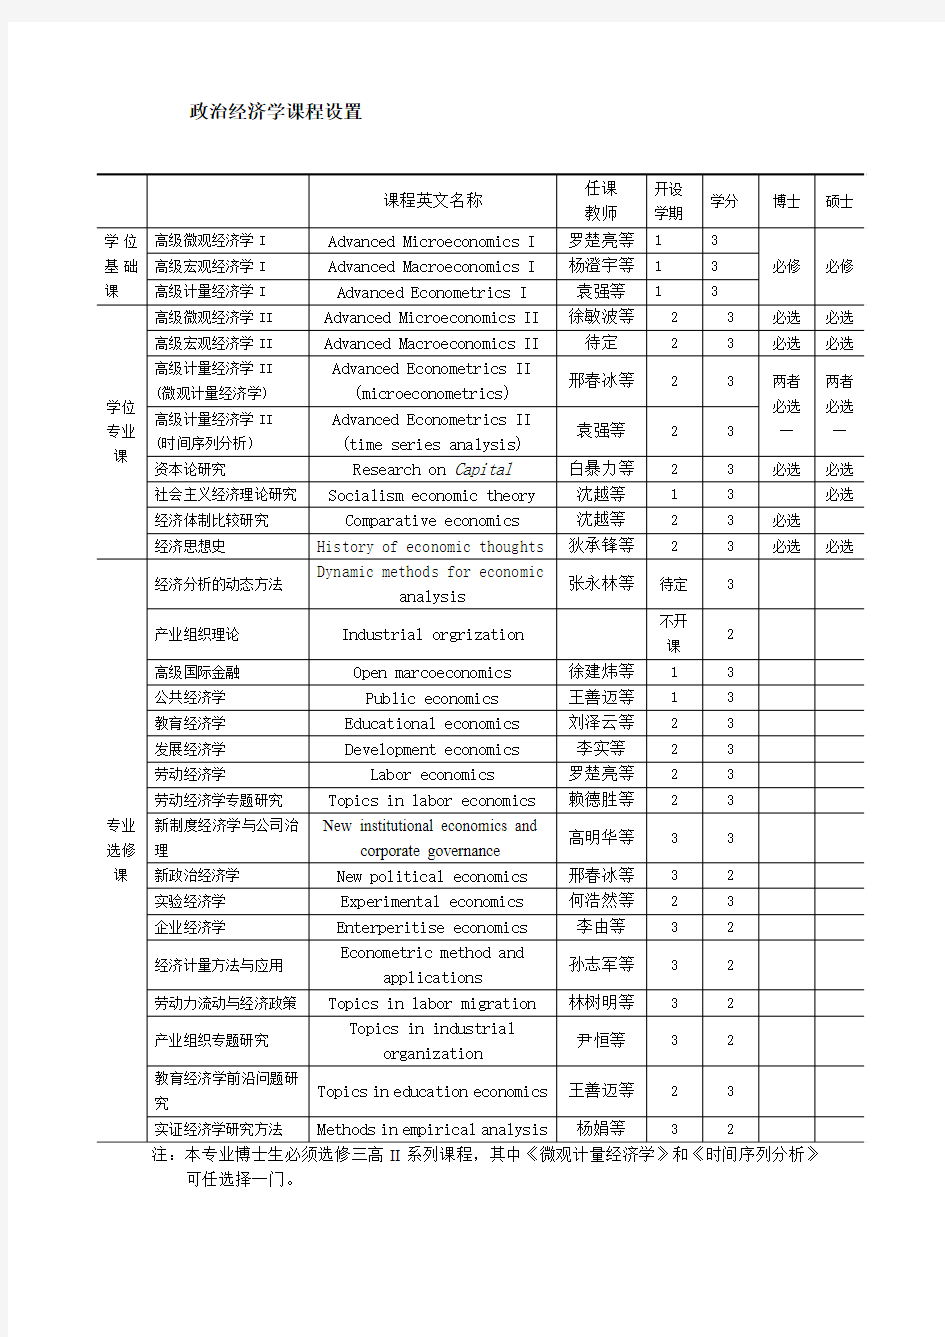 北京师范大学经济与工商管理学院博士、硕士生课程表